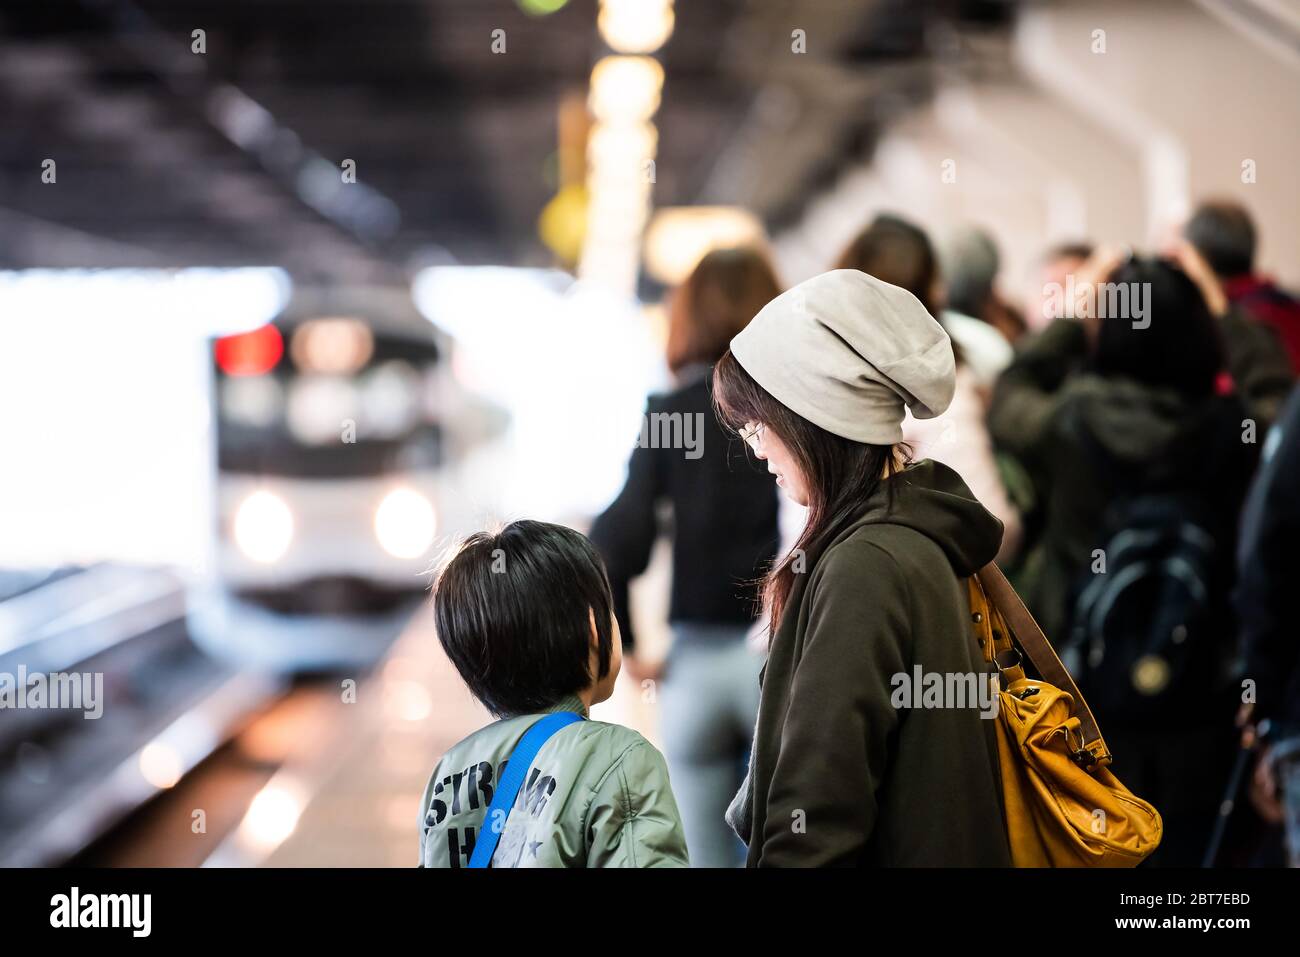 Utsunomiya, Giappone - 5 aprile 2019: Linea ferroviaria locale della piattaforma della stazione JR per Nikko con la madre e la bambina della gente locale in attesa e in arrivo headligh Foto Stock